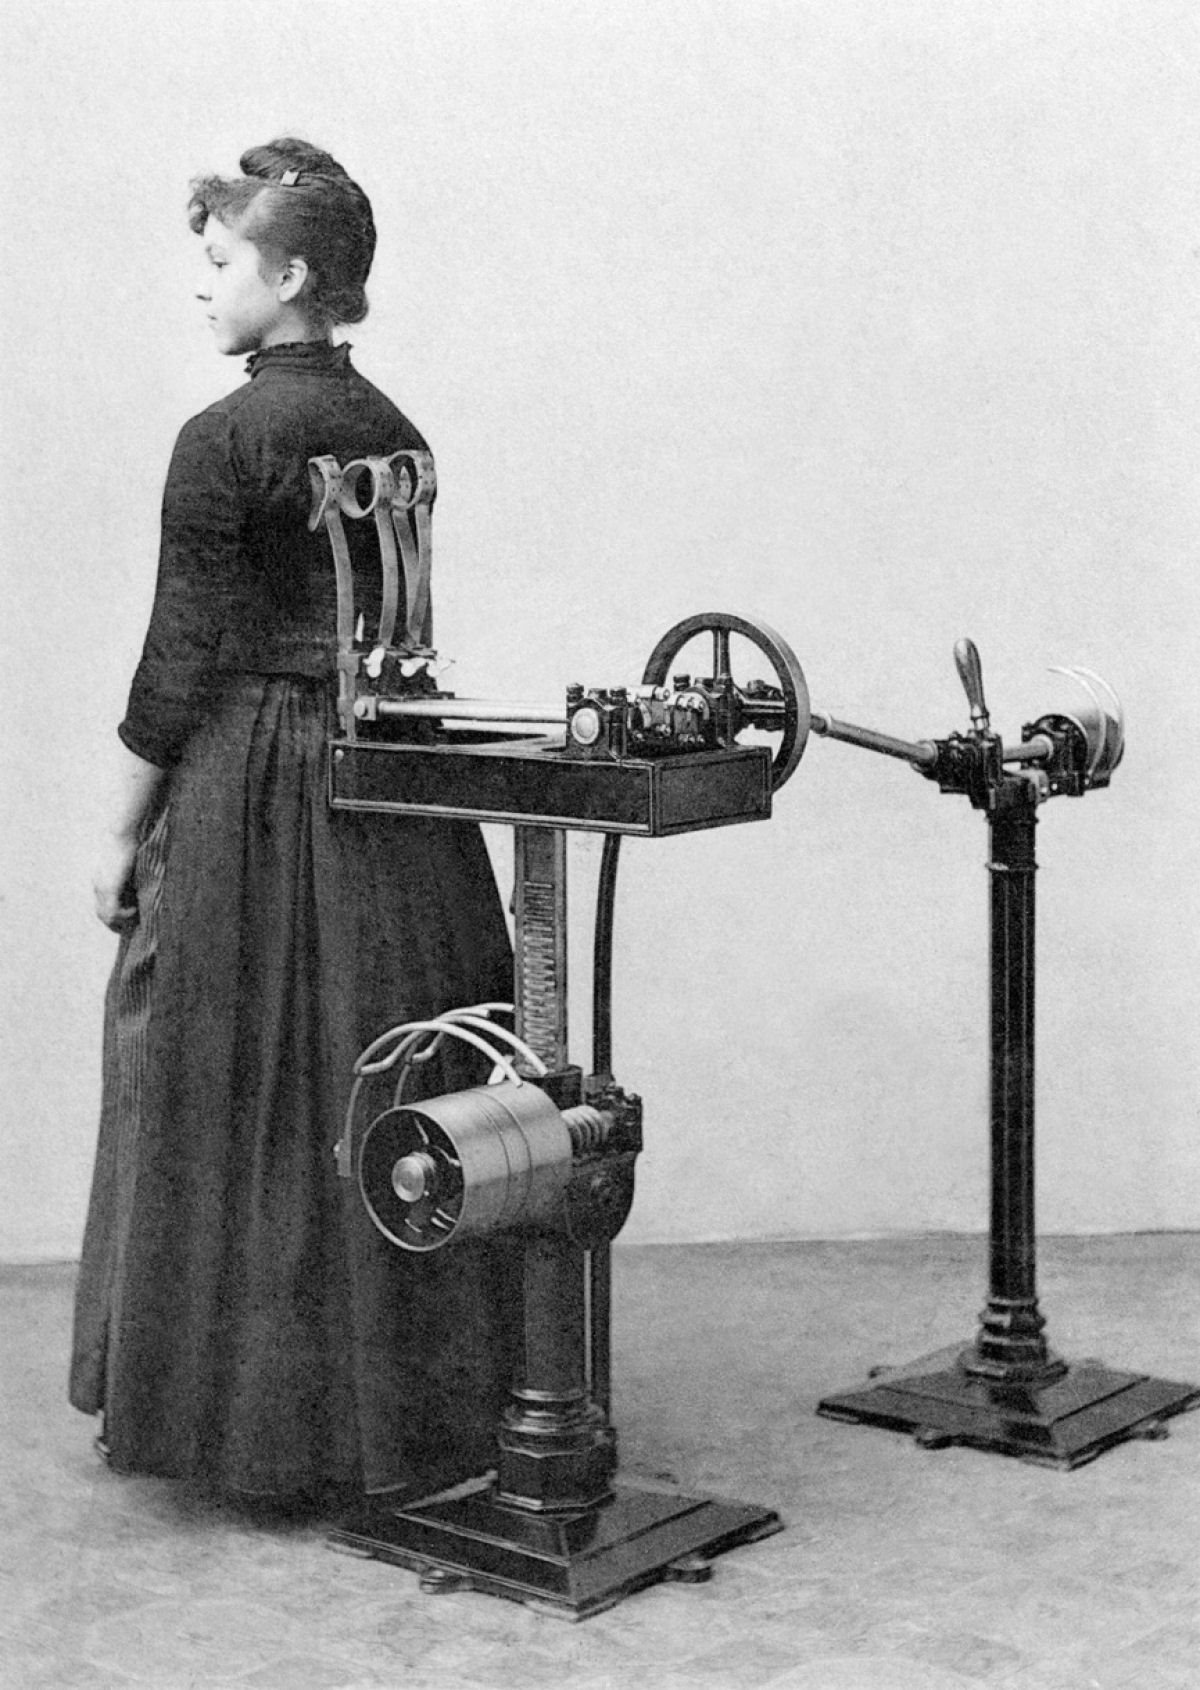 Suor e corset. Academia mecânica no século XIX 03